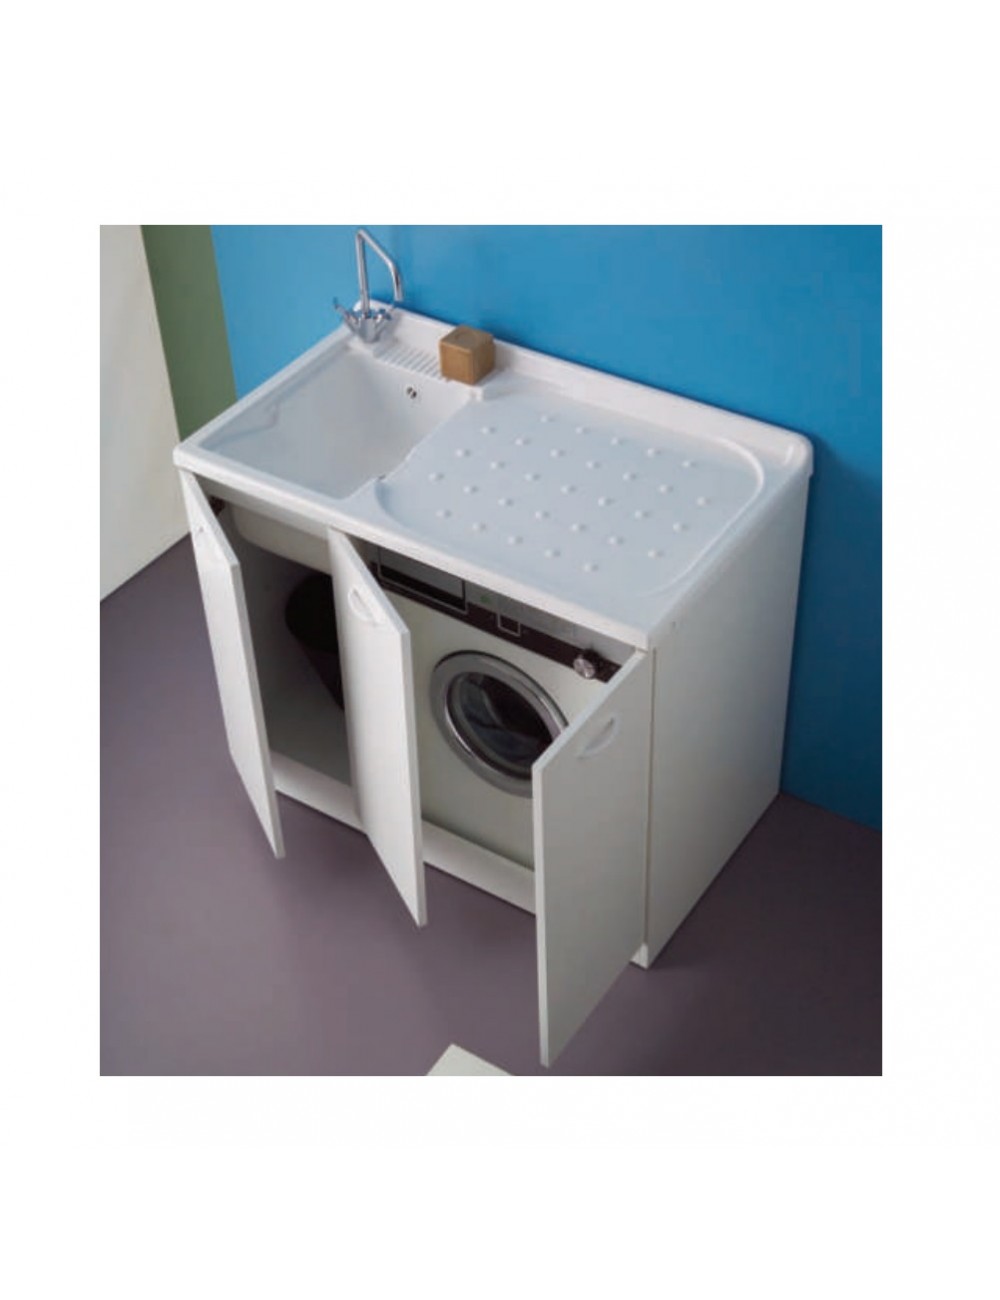 Mobile lavanderia con lavatoio mod. Lady Intra cm 110 x 60 x h90